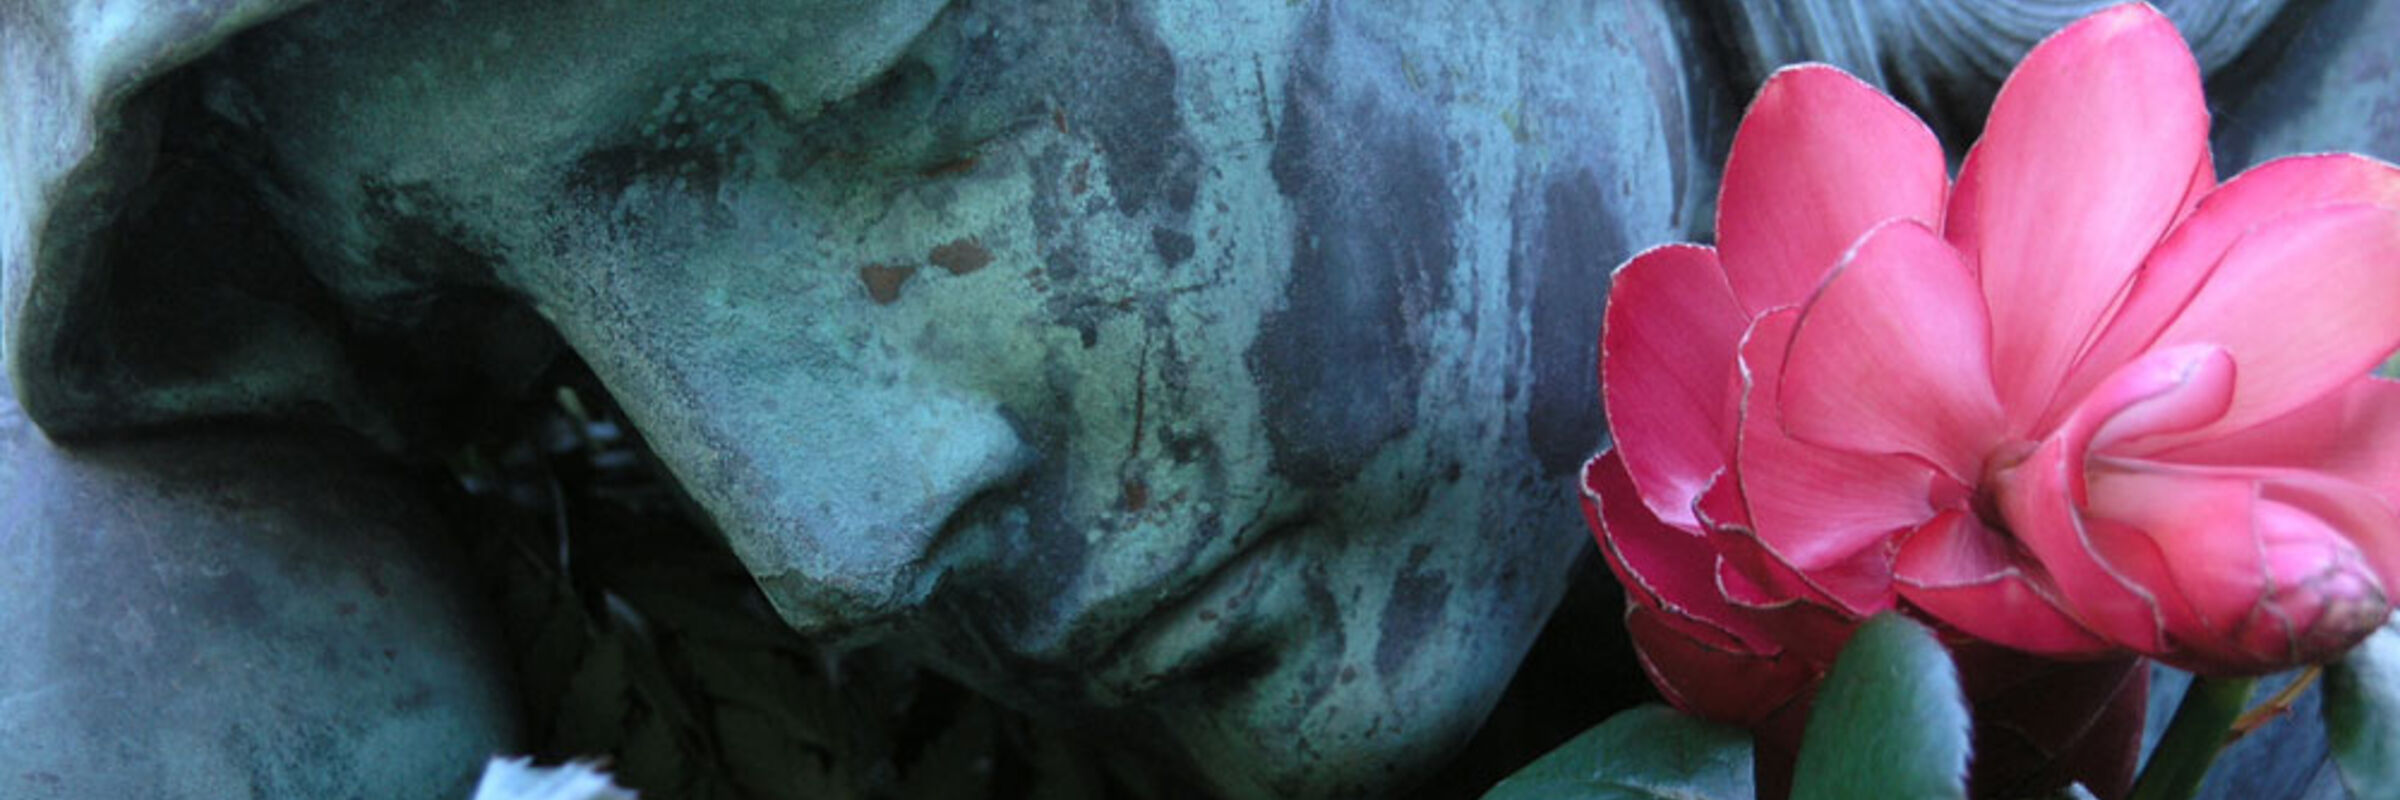 Das Bild zeigt eine graue Steinfigur mit einem Tuch über dem Kopf, die traurig zu Boden schaut. Unter dem Kinn der Figur klemmt eine fuchsia-farbene Blume.